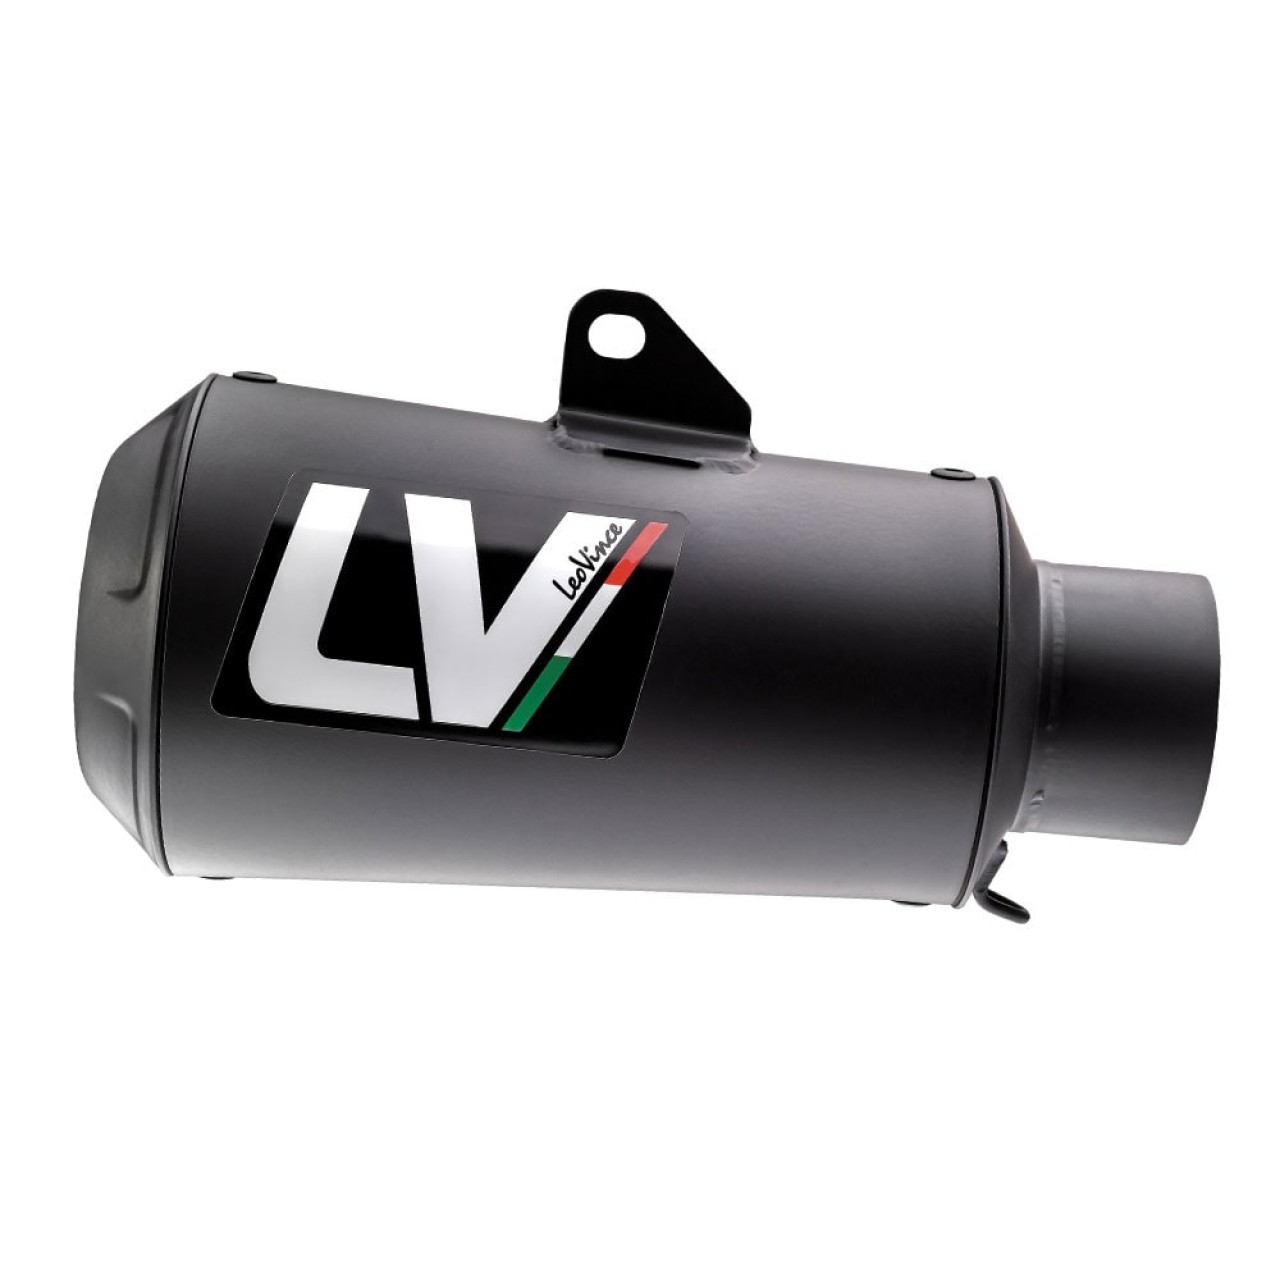 LeoVince exhaust system LV 10 Full Black for Honda CB 1000 R, stainless  steel black, slip on, Euro4+5